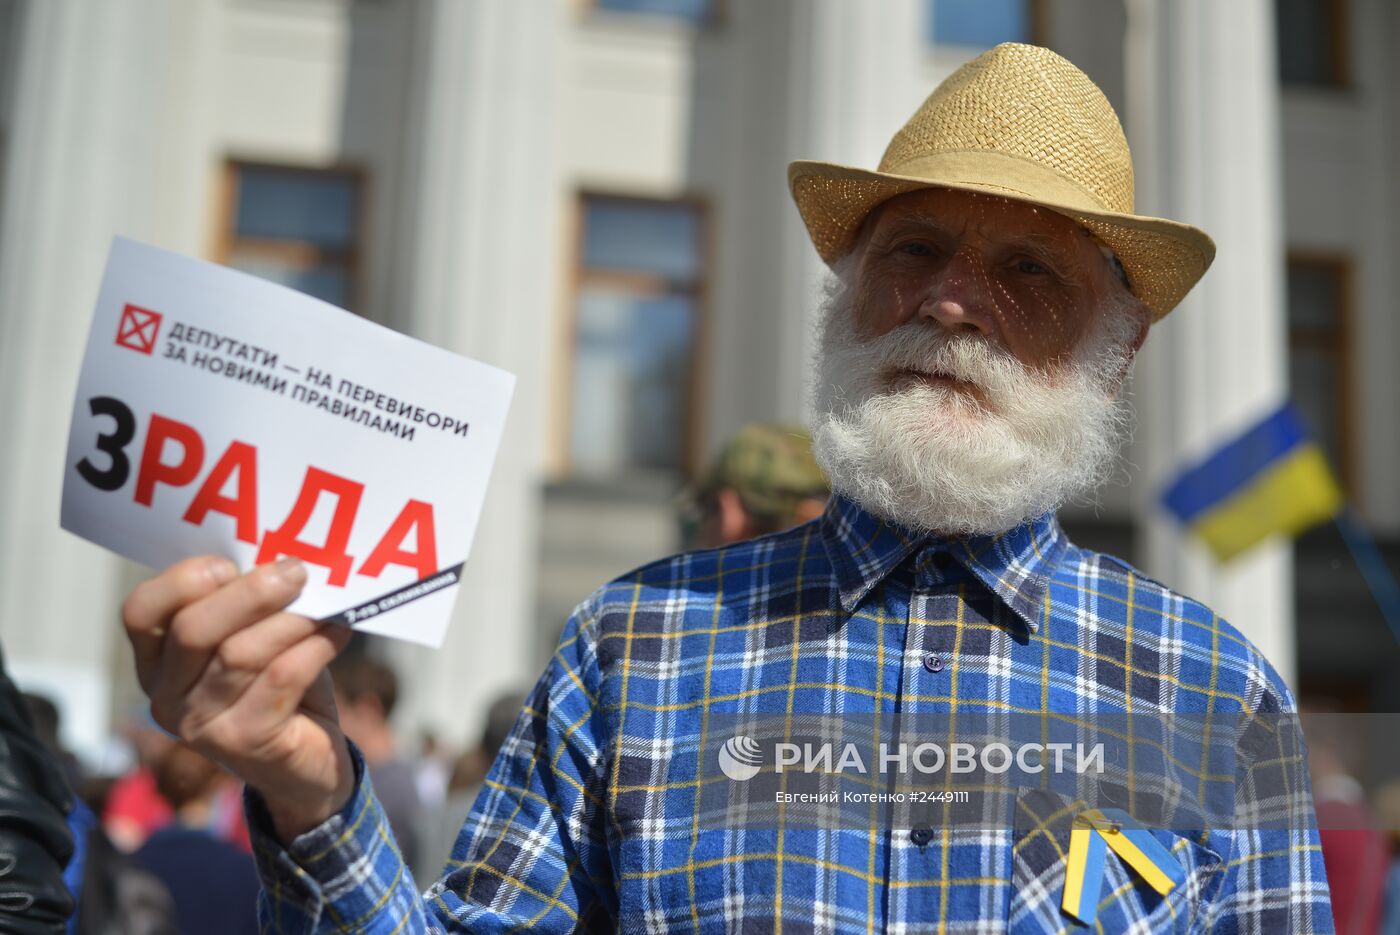 Пикет с требованием перевыборов парламента Украины